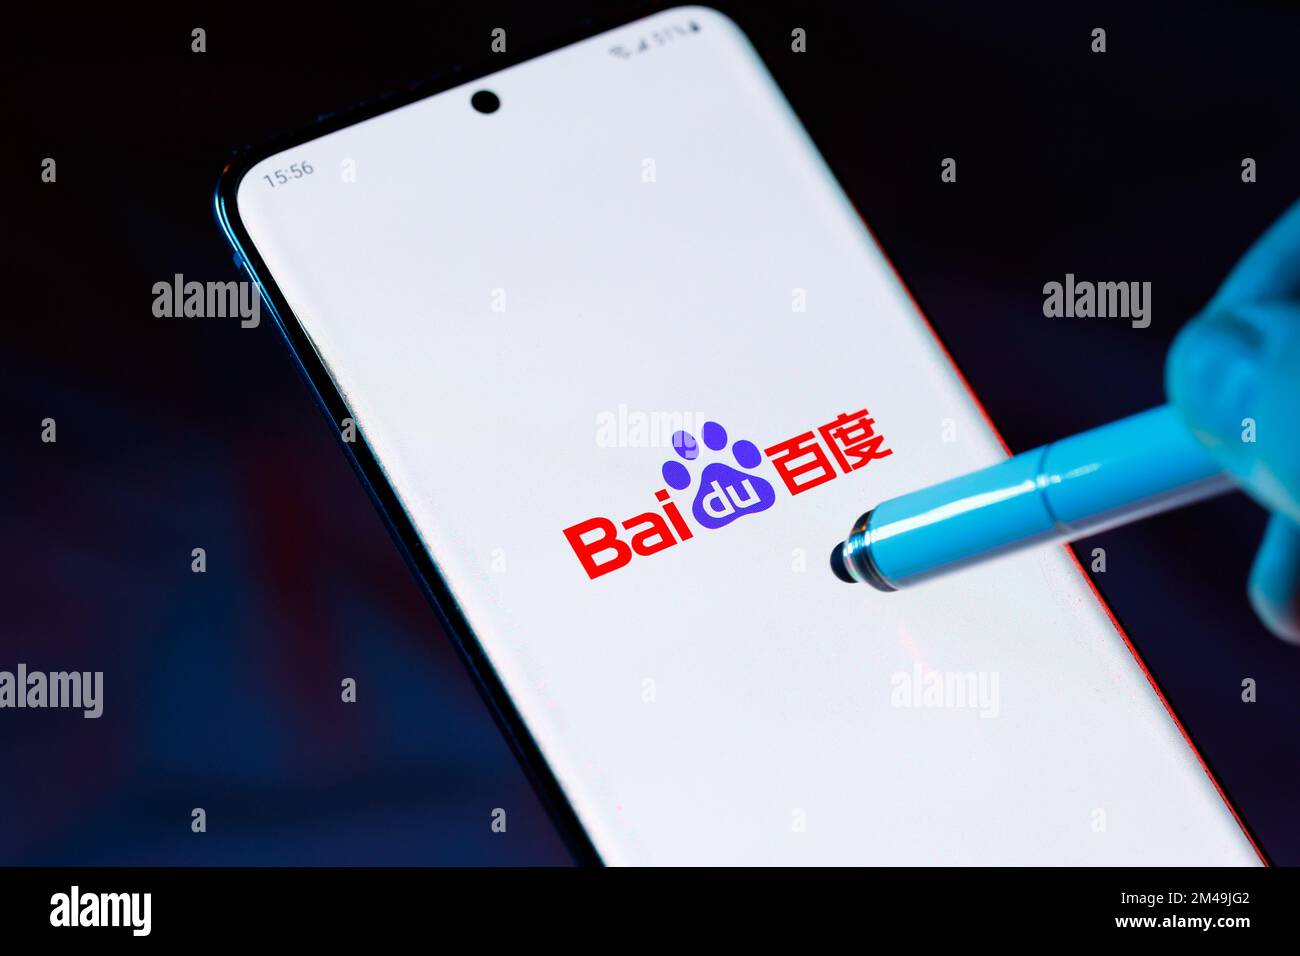 Logo von Baidu 百度 auf einem Smartphone mit auf den Bildschirm zeigendem Eingabestift. Baidu ist ein chinesisches Internet- und KI-Technologieunternehmen. Stockfoto